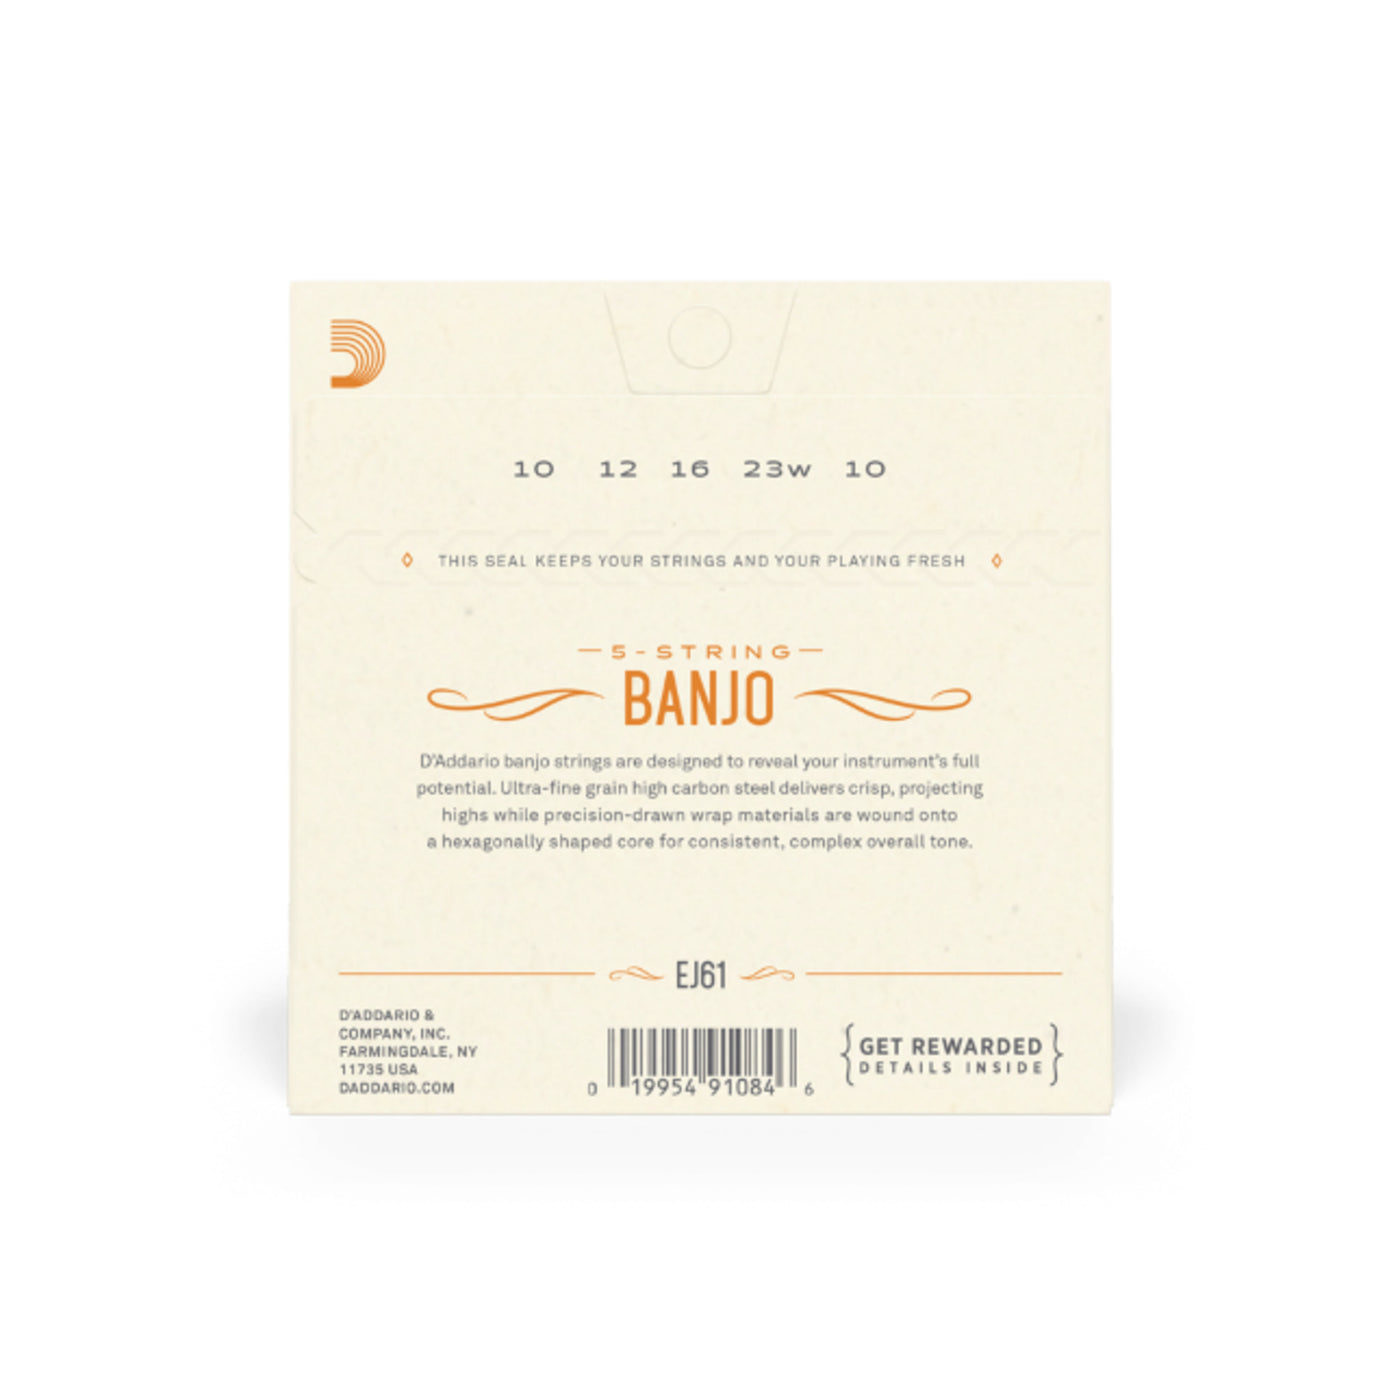 D'Addario 5-String Banjo Strings, Nickel, Medium 10-23 (EJ61)